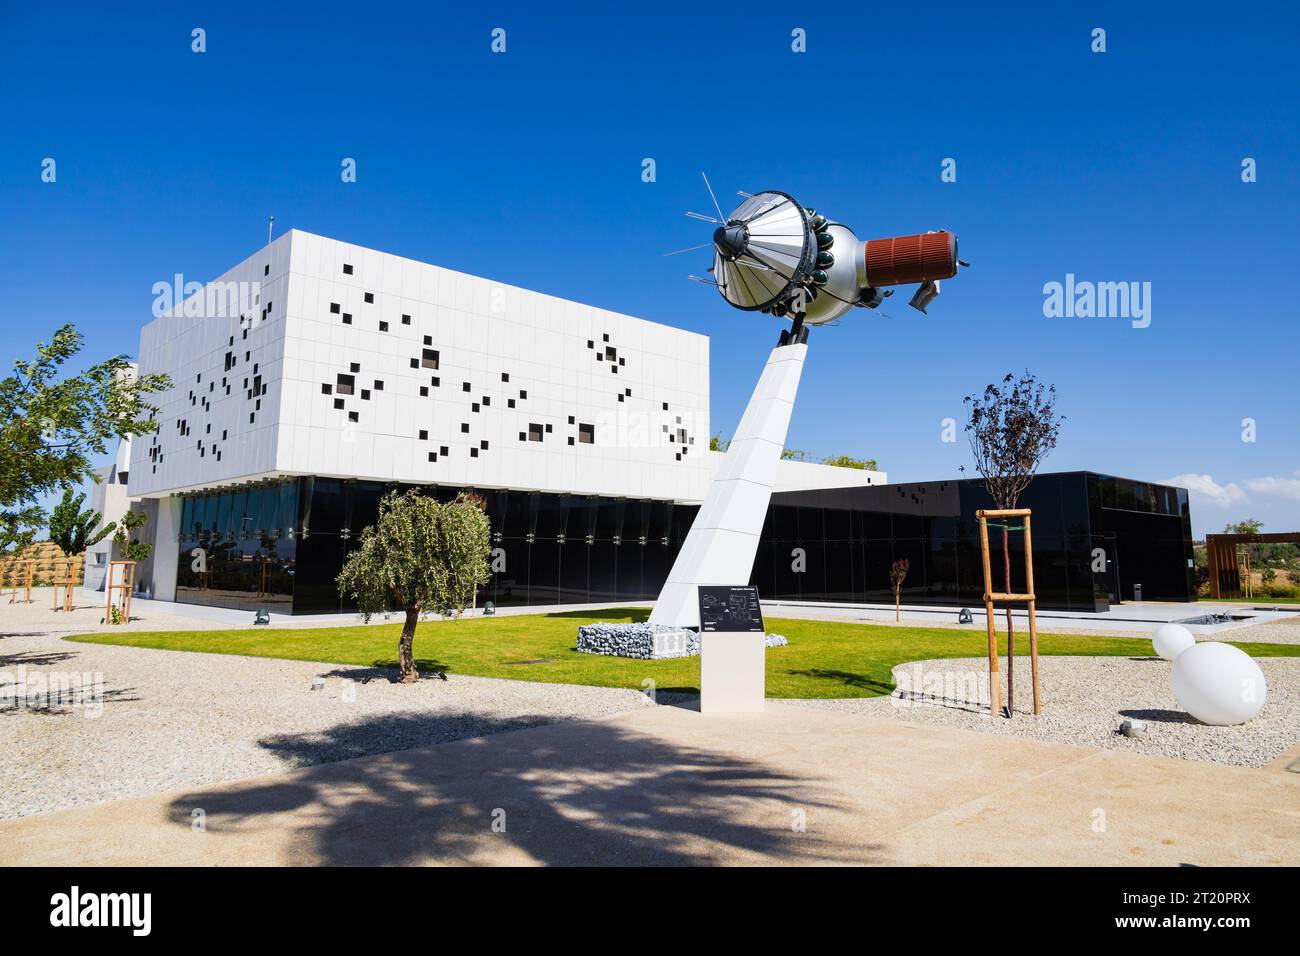 The Cyprus Planetarium in the grounds of the Holy Metropolis of Tamason and Oreinis, Episkopeio, Nicosia, Cyprus Stock Photo